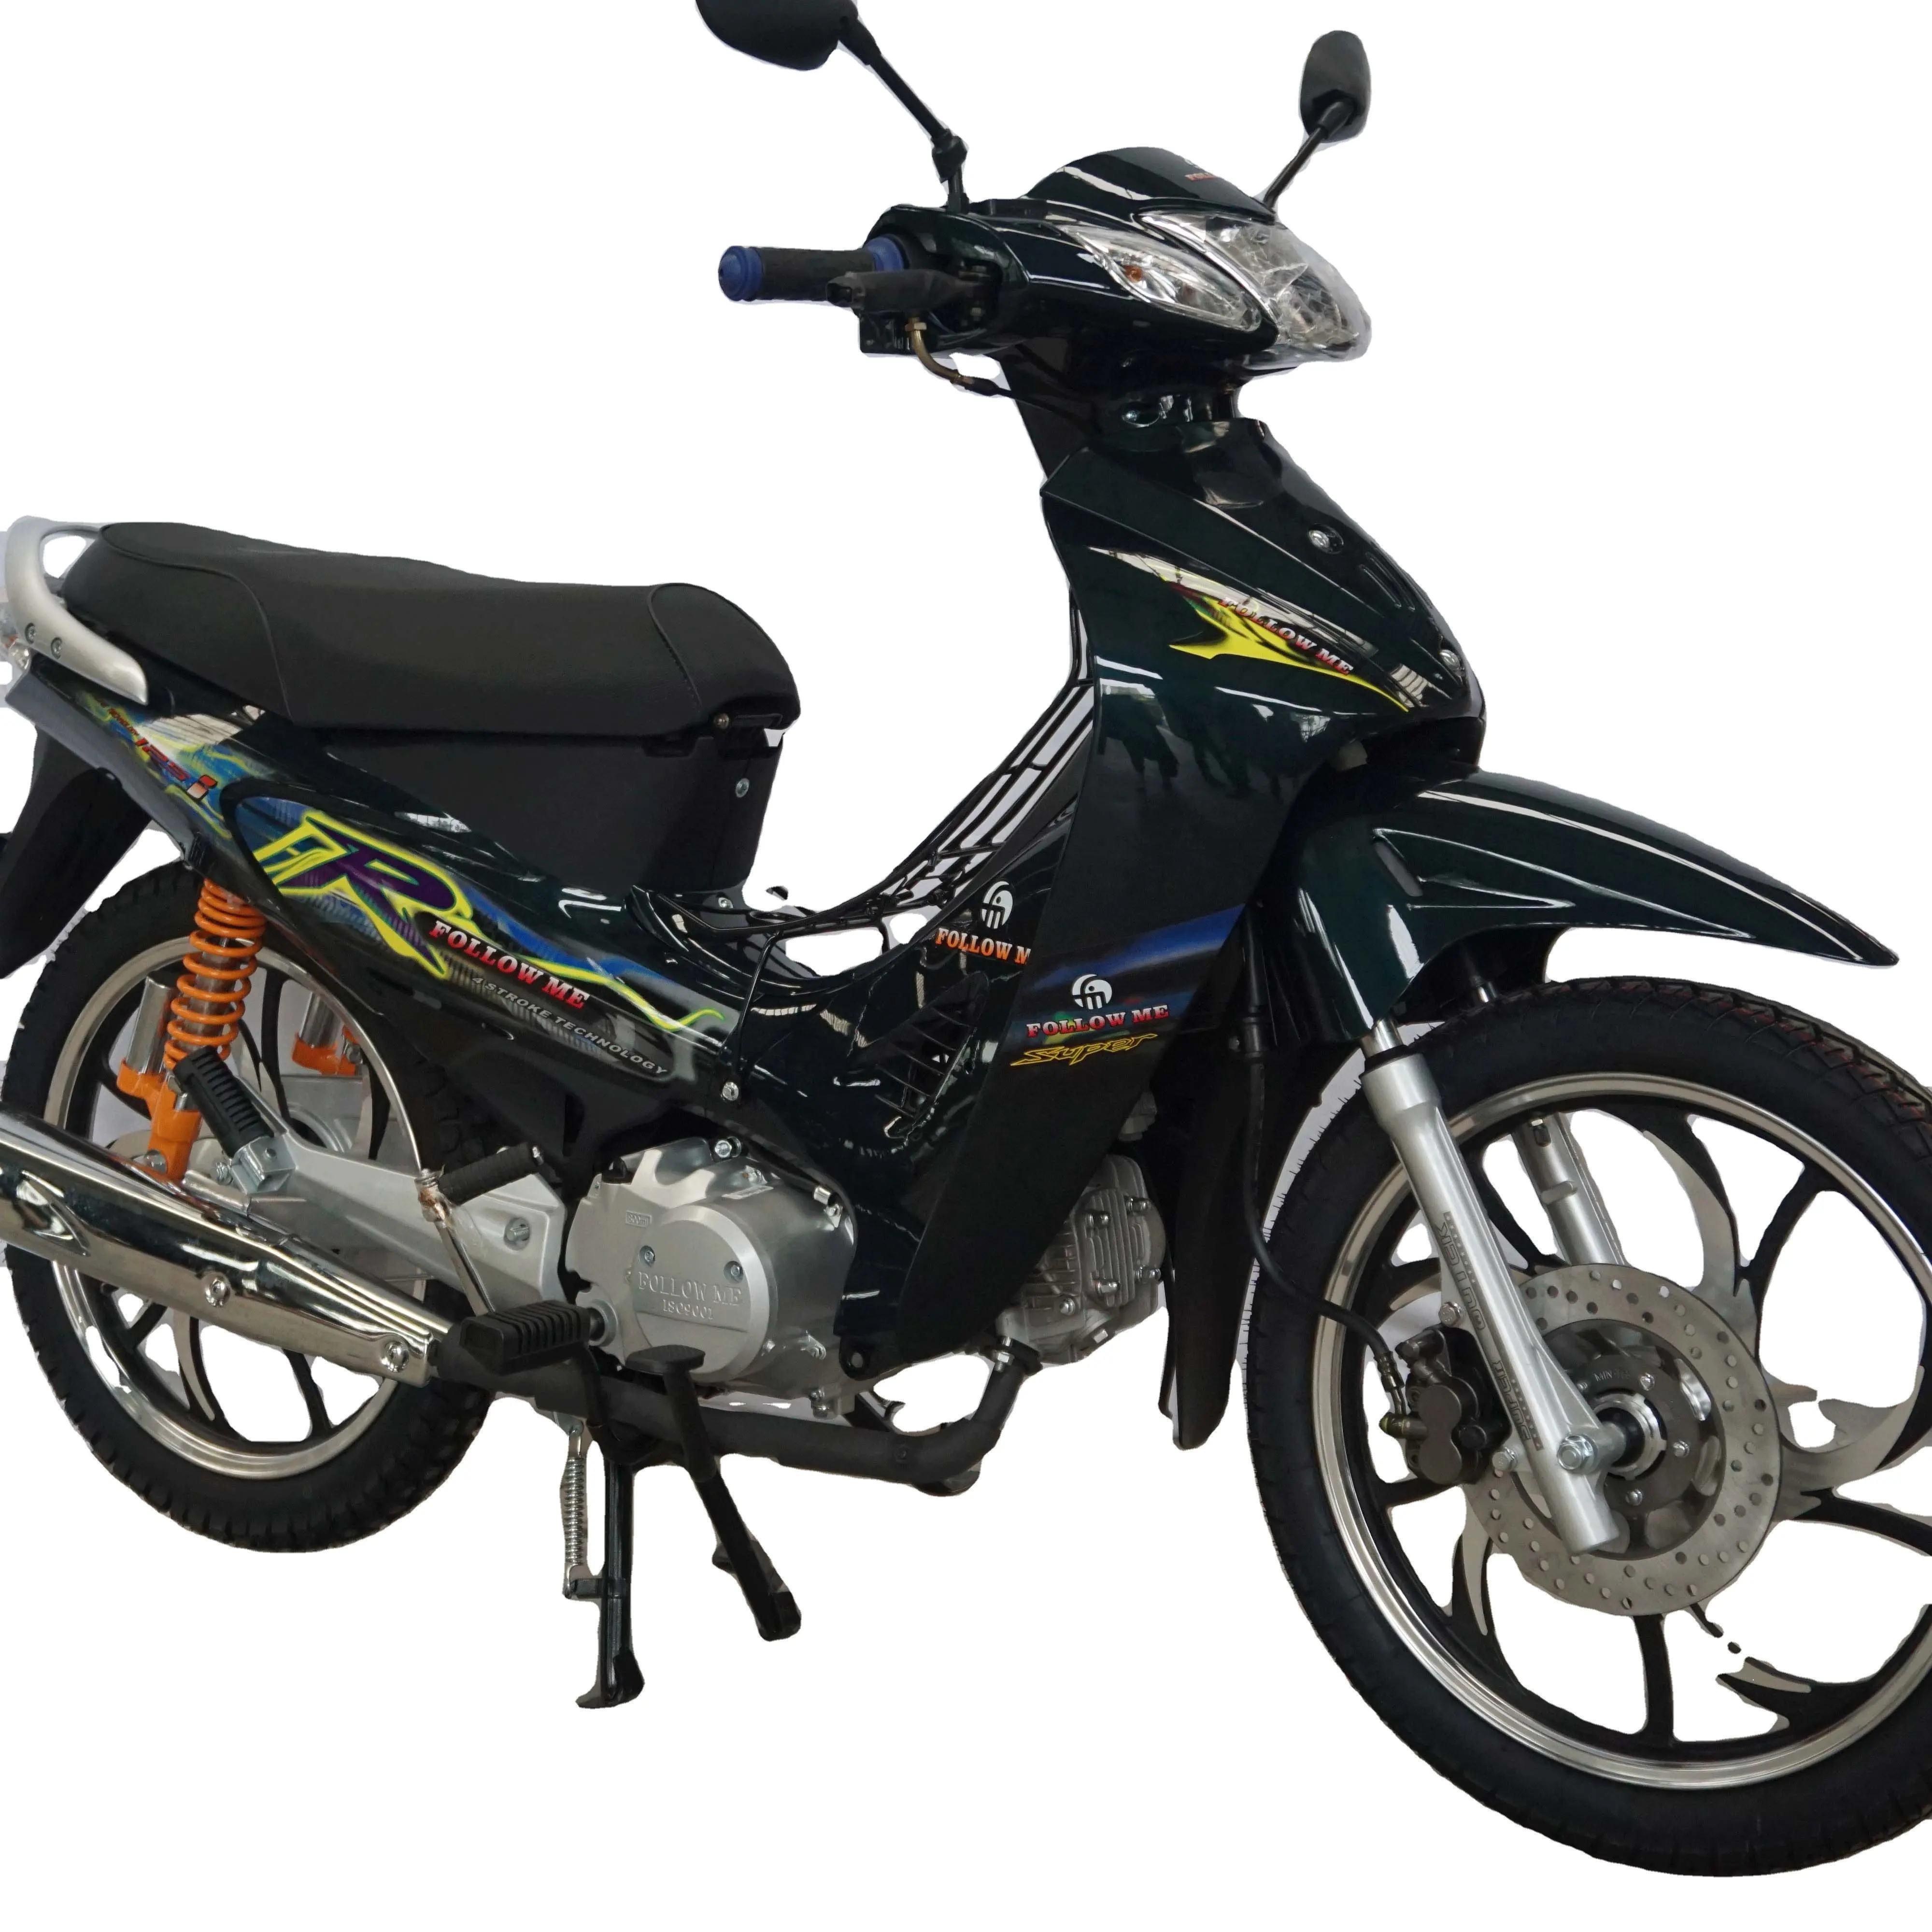 Super Offres Spéciales en afrique cub 110cc/125cc moto approvisionnement direct d'usine moteur essence refroidi à l'air stable moto